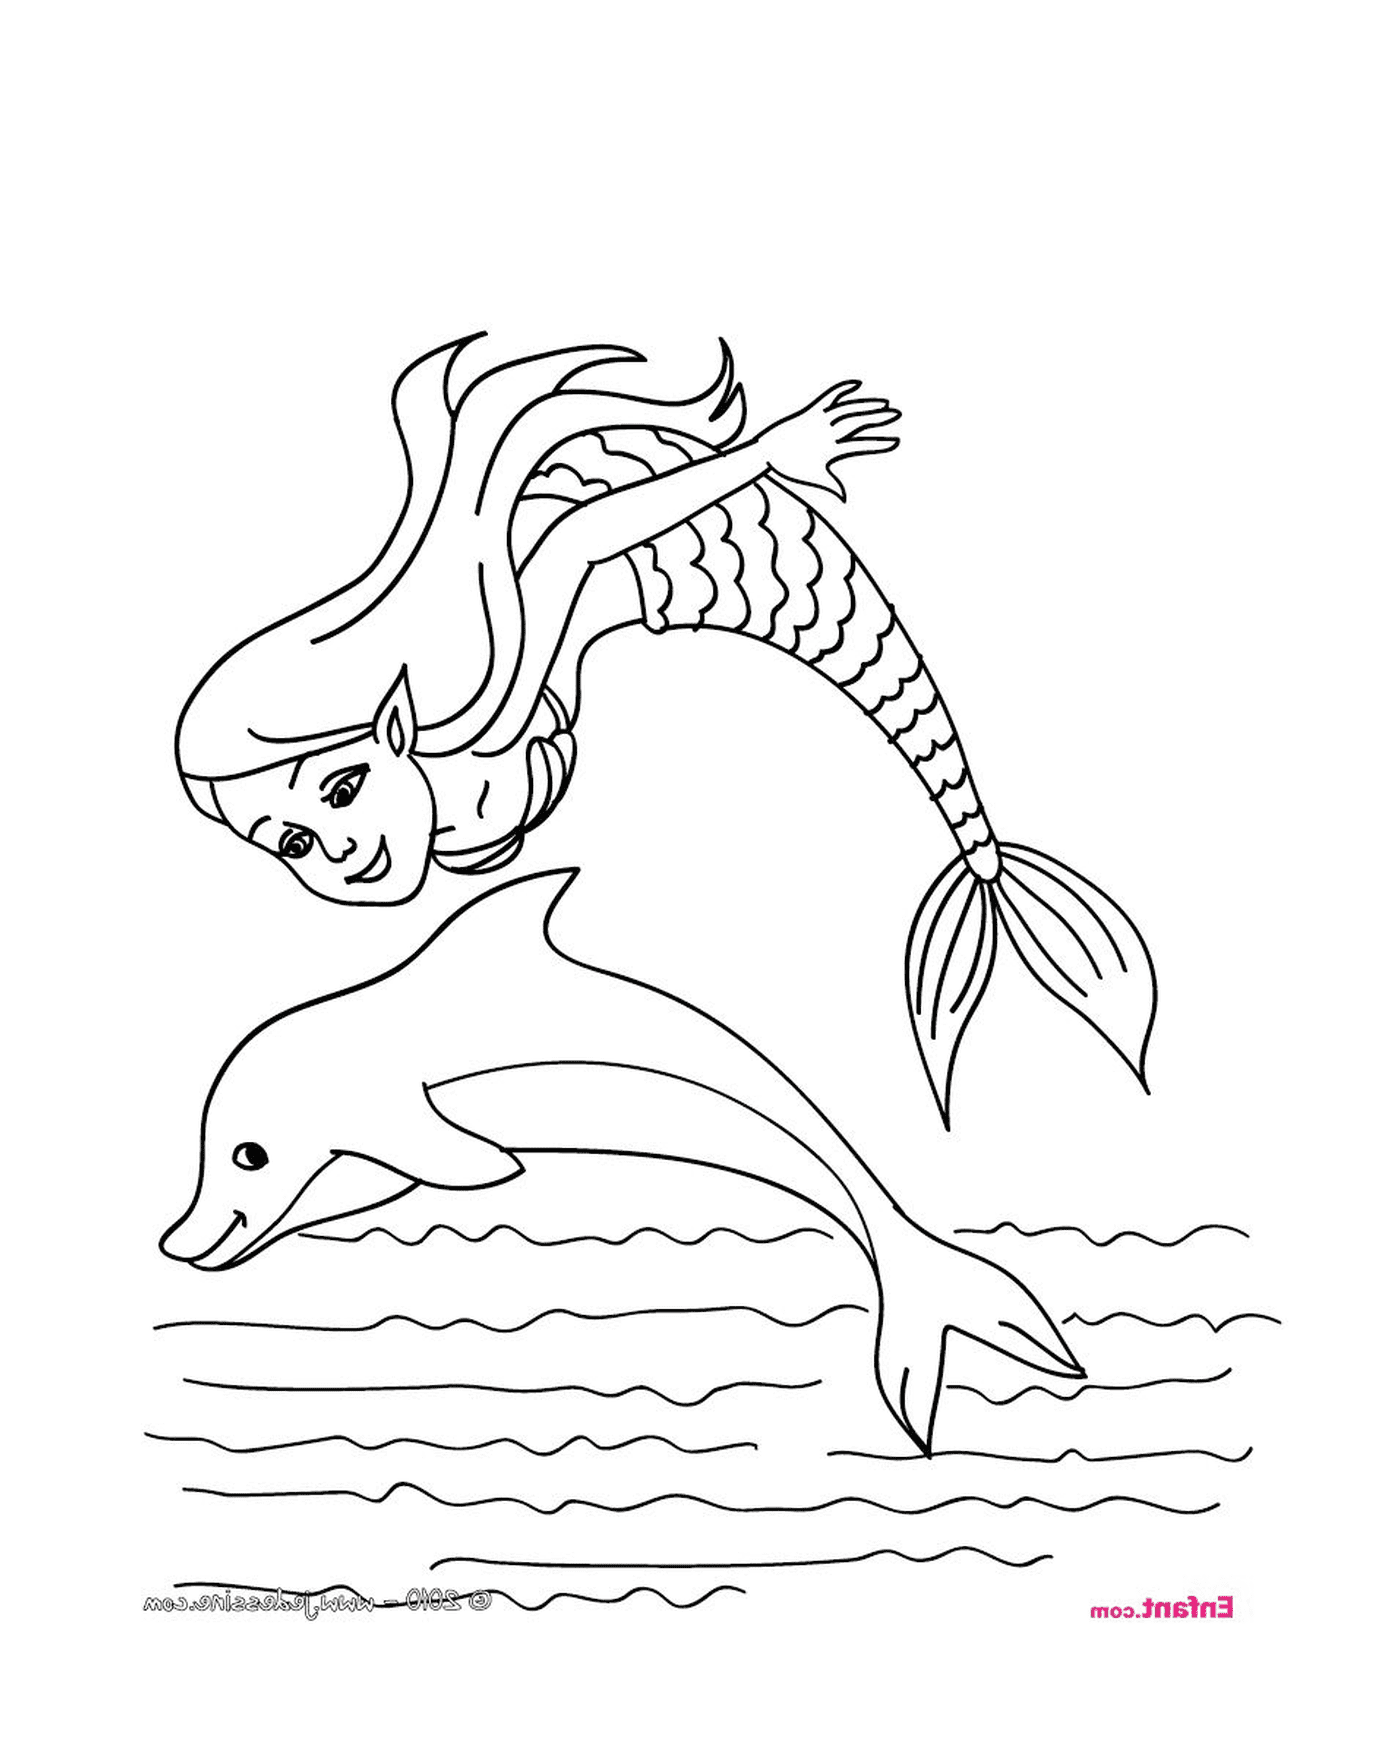   Une sirène et un dauphin 